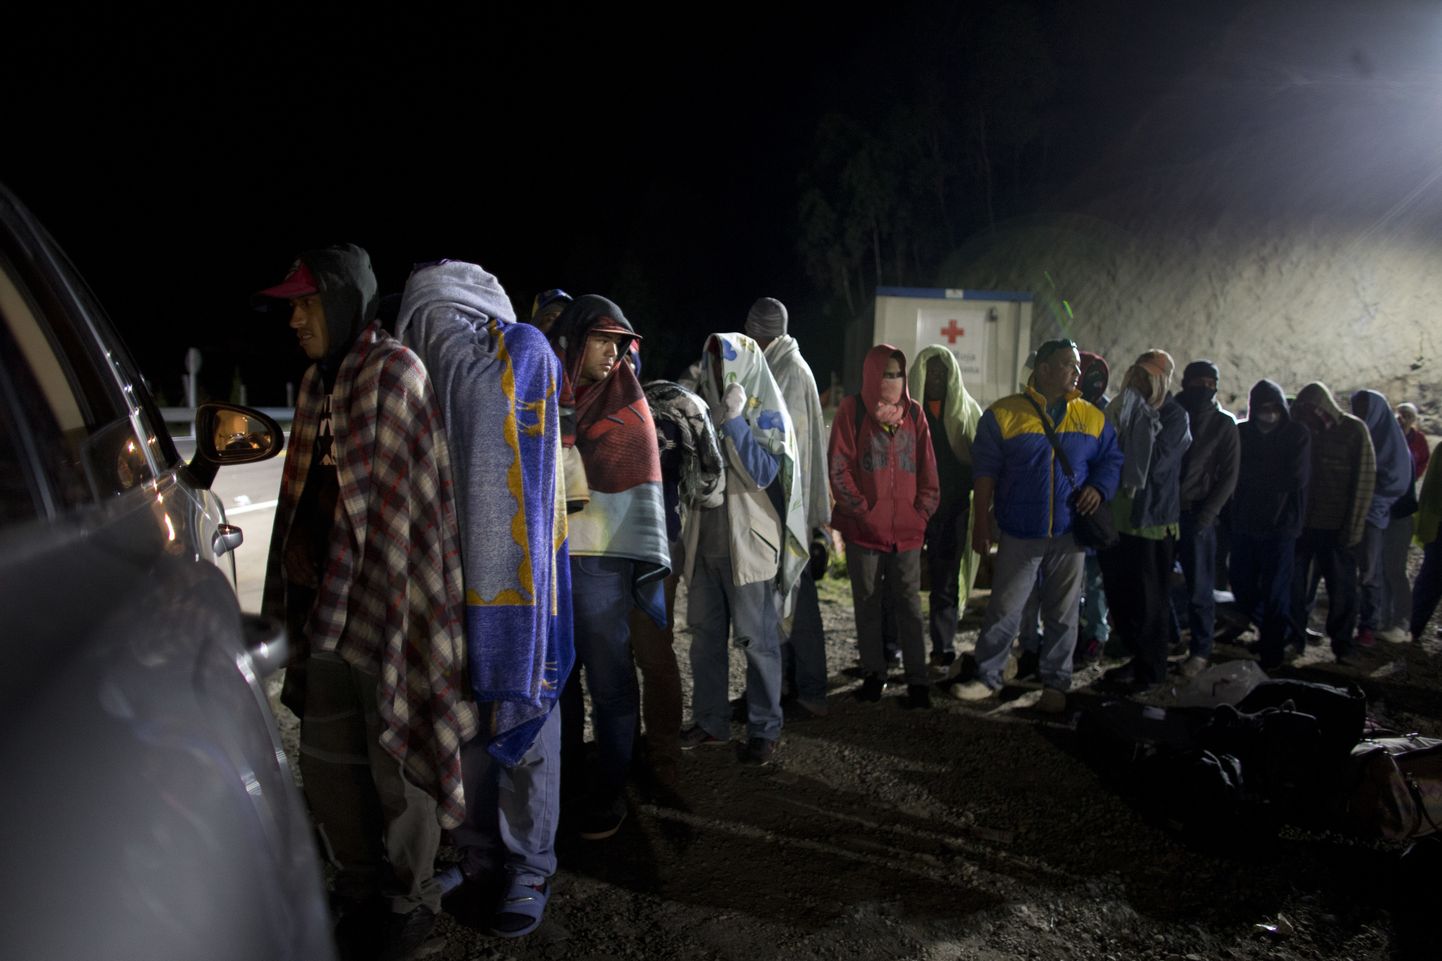 Maailma üks tõsisemaid põgenikekriise valitseb Lõuna-Ameerikas, sest viimase kolme aastaga on Venezuelast põgenenud üle kolme miljoni inimese.